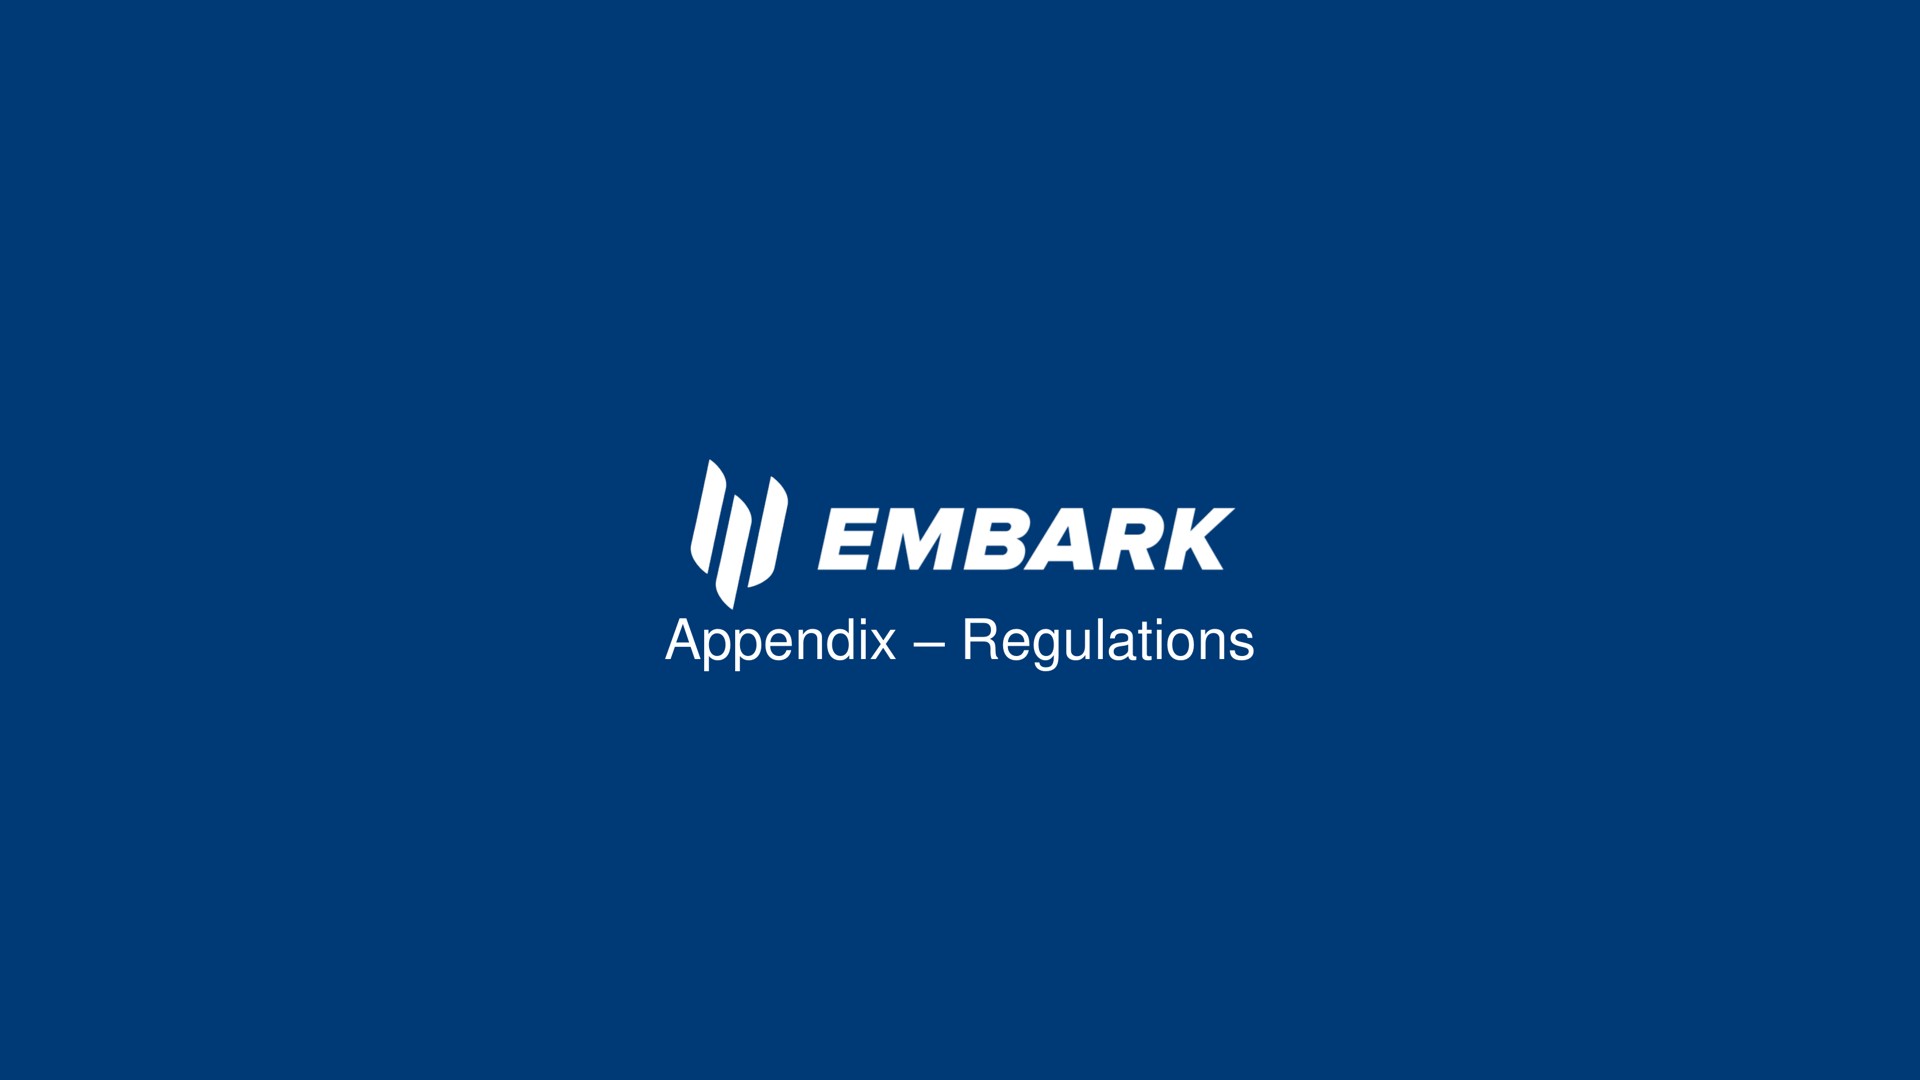 appendix regulations embark | Embark